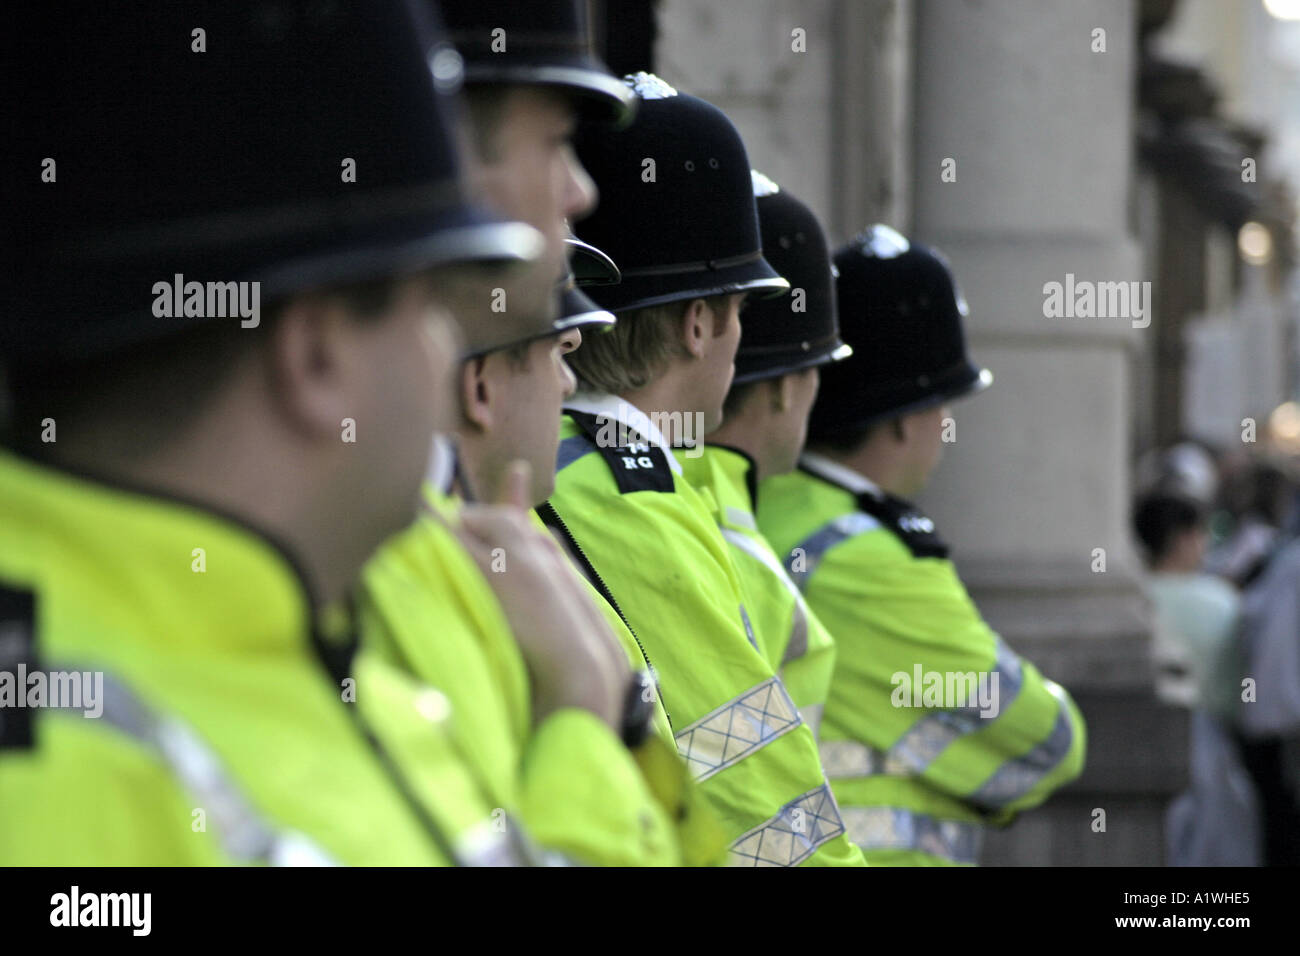 Les officiers de la police britannique à Londres Angleterre Royaume-uni Banque D'Images